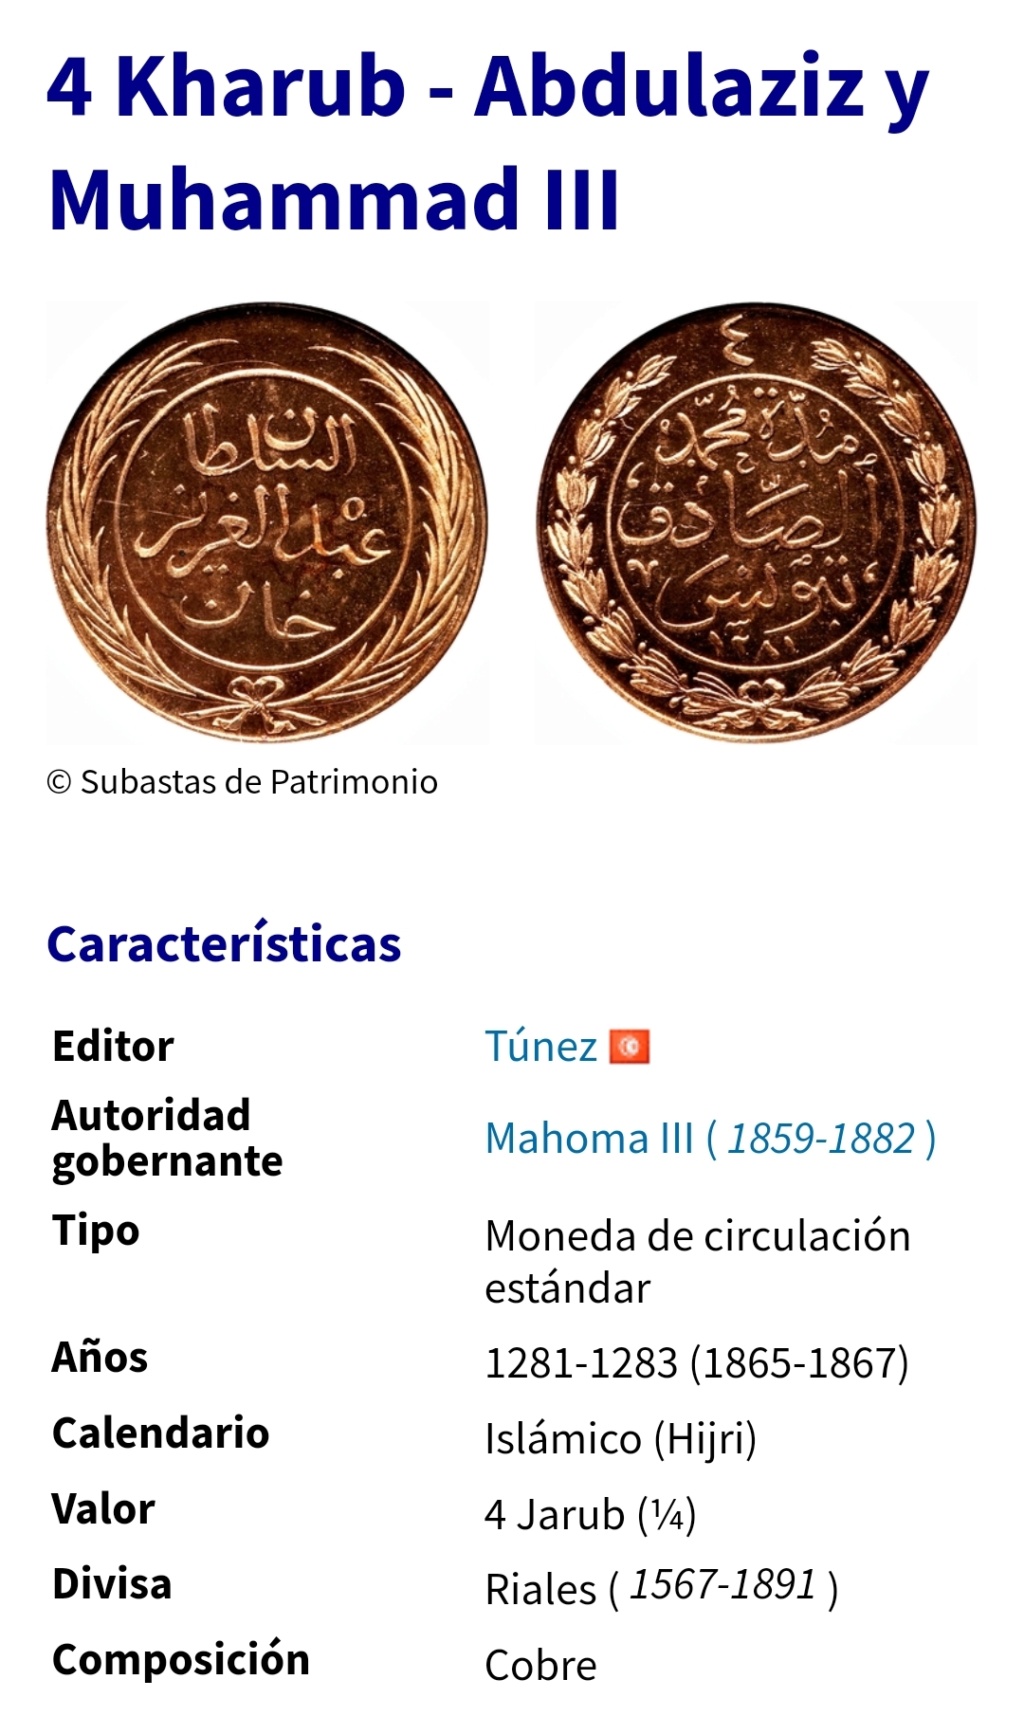 4 kharub de Abdulaziz y Muhammad III, Túnez, 1281 Screen21